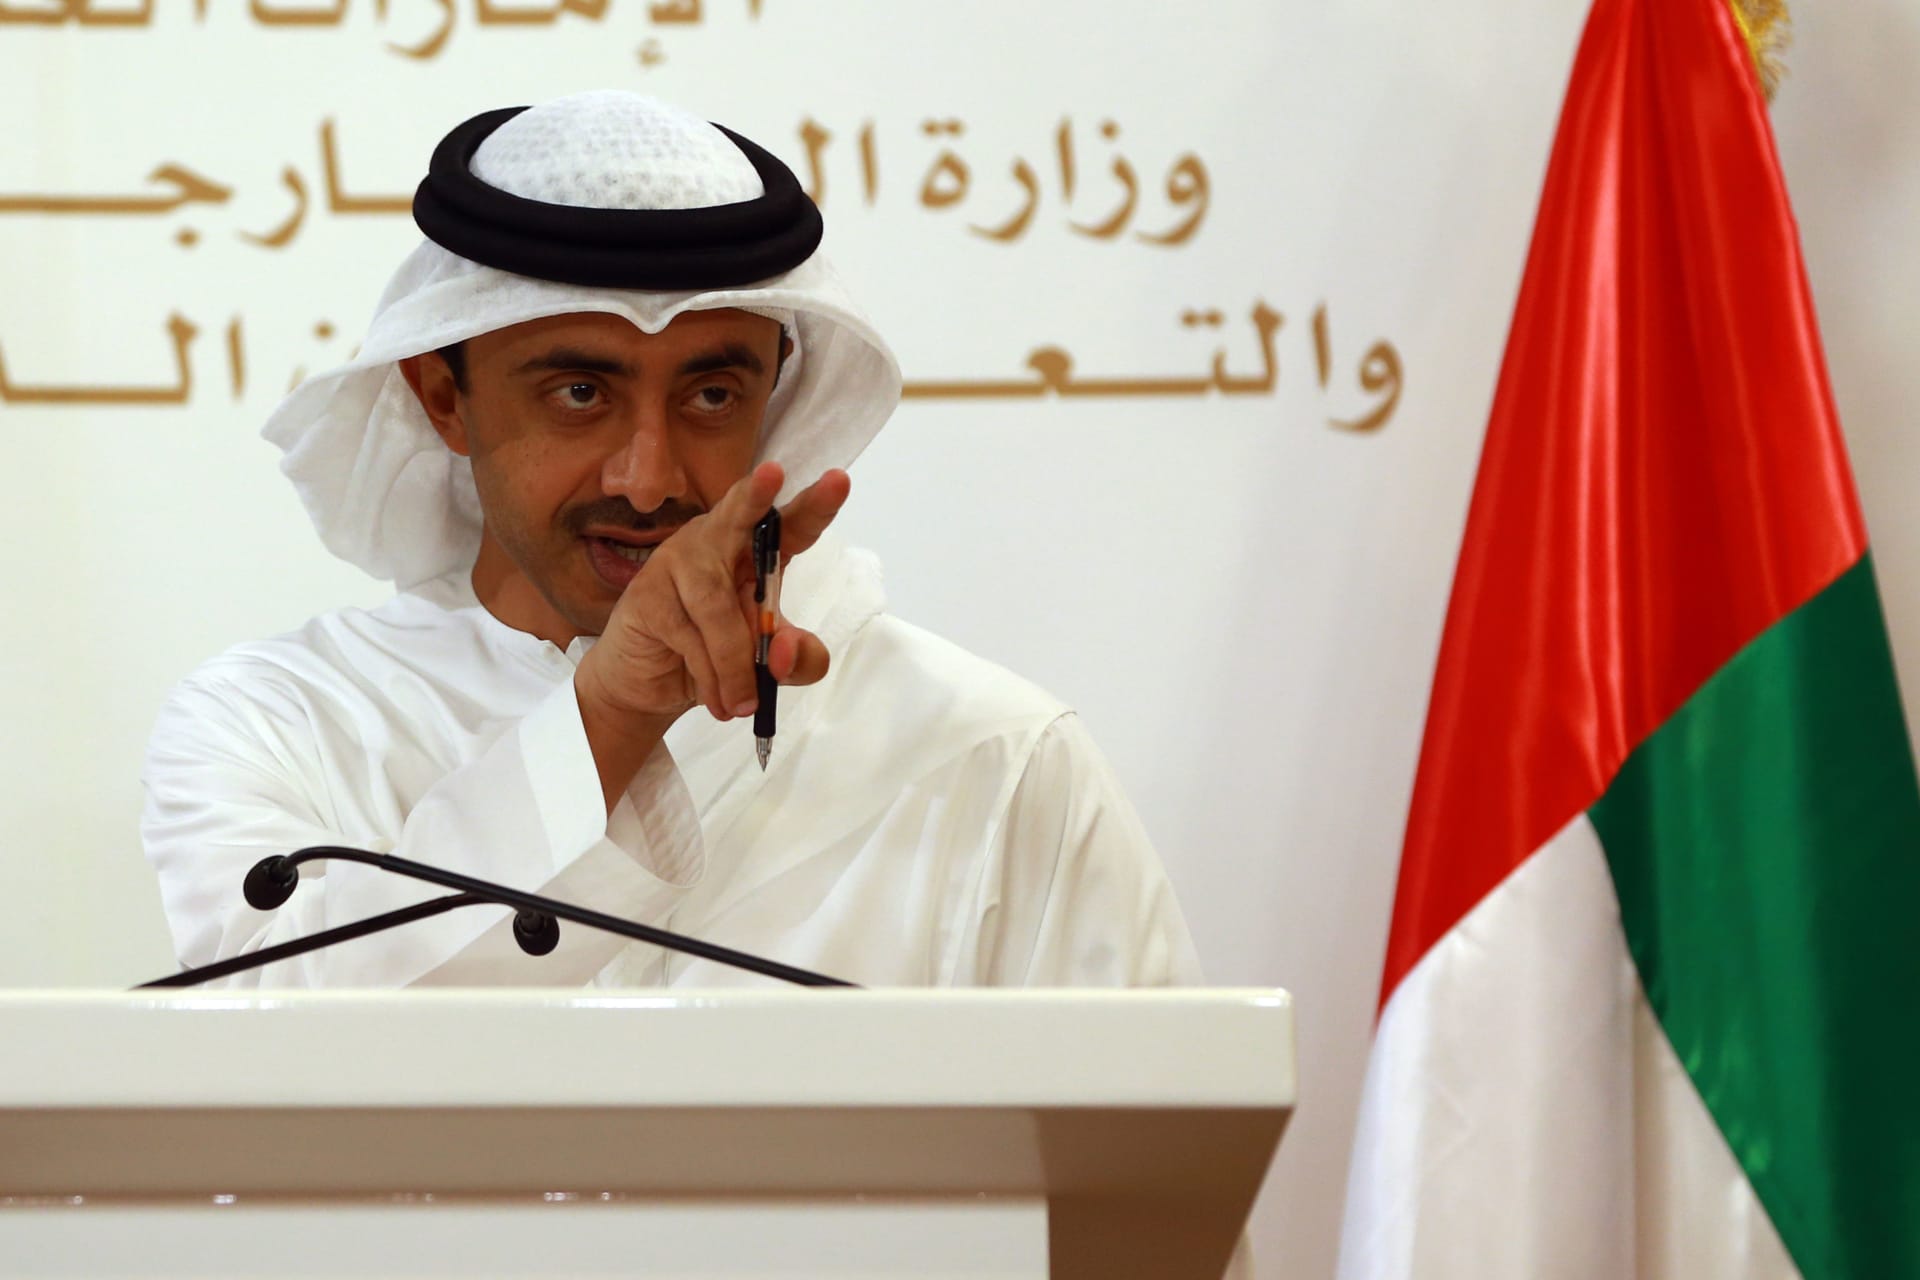 عبدالله بن زايد: إن أرادت قطر أن تكون عضواً بـ"التحالف" فـ"أهلاً وسهلاً".. وإن أرادت الجانب الآخر فـ"مع السلامة"